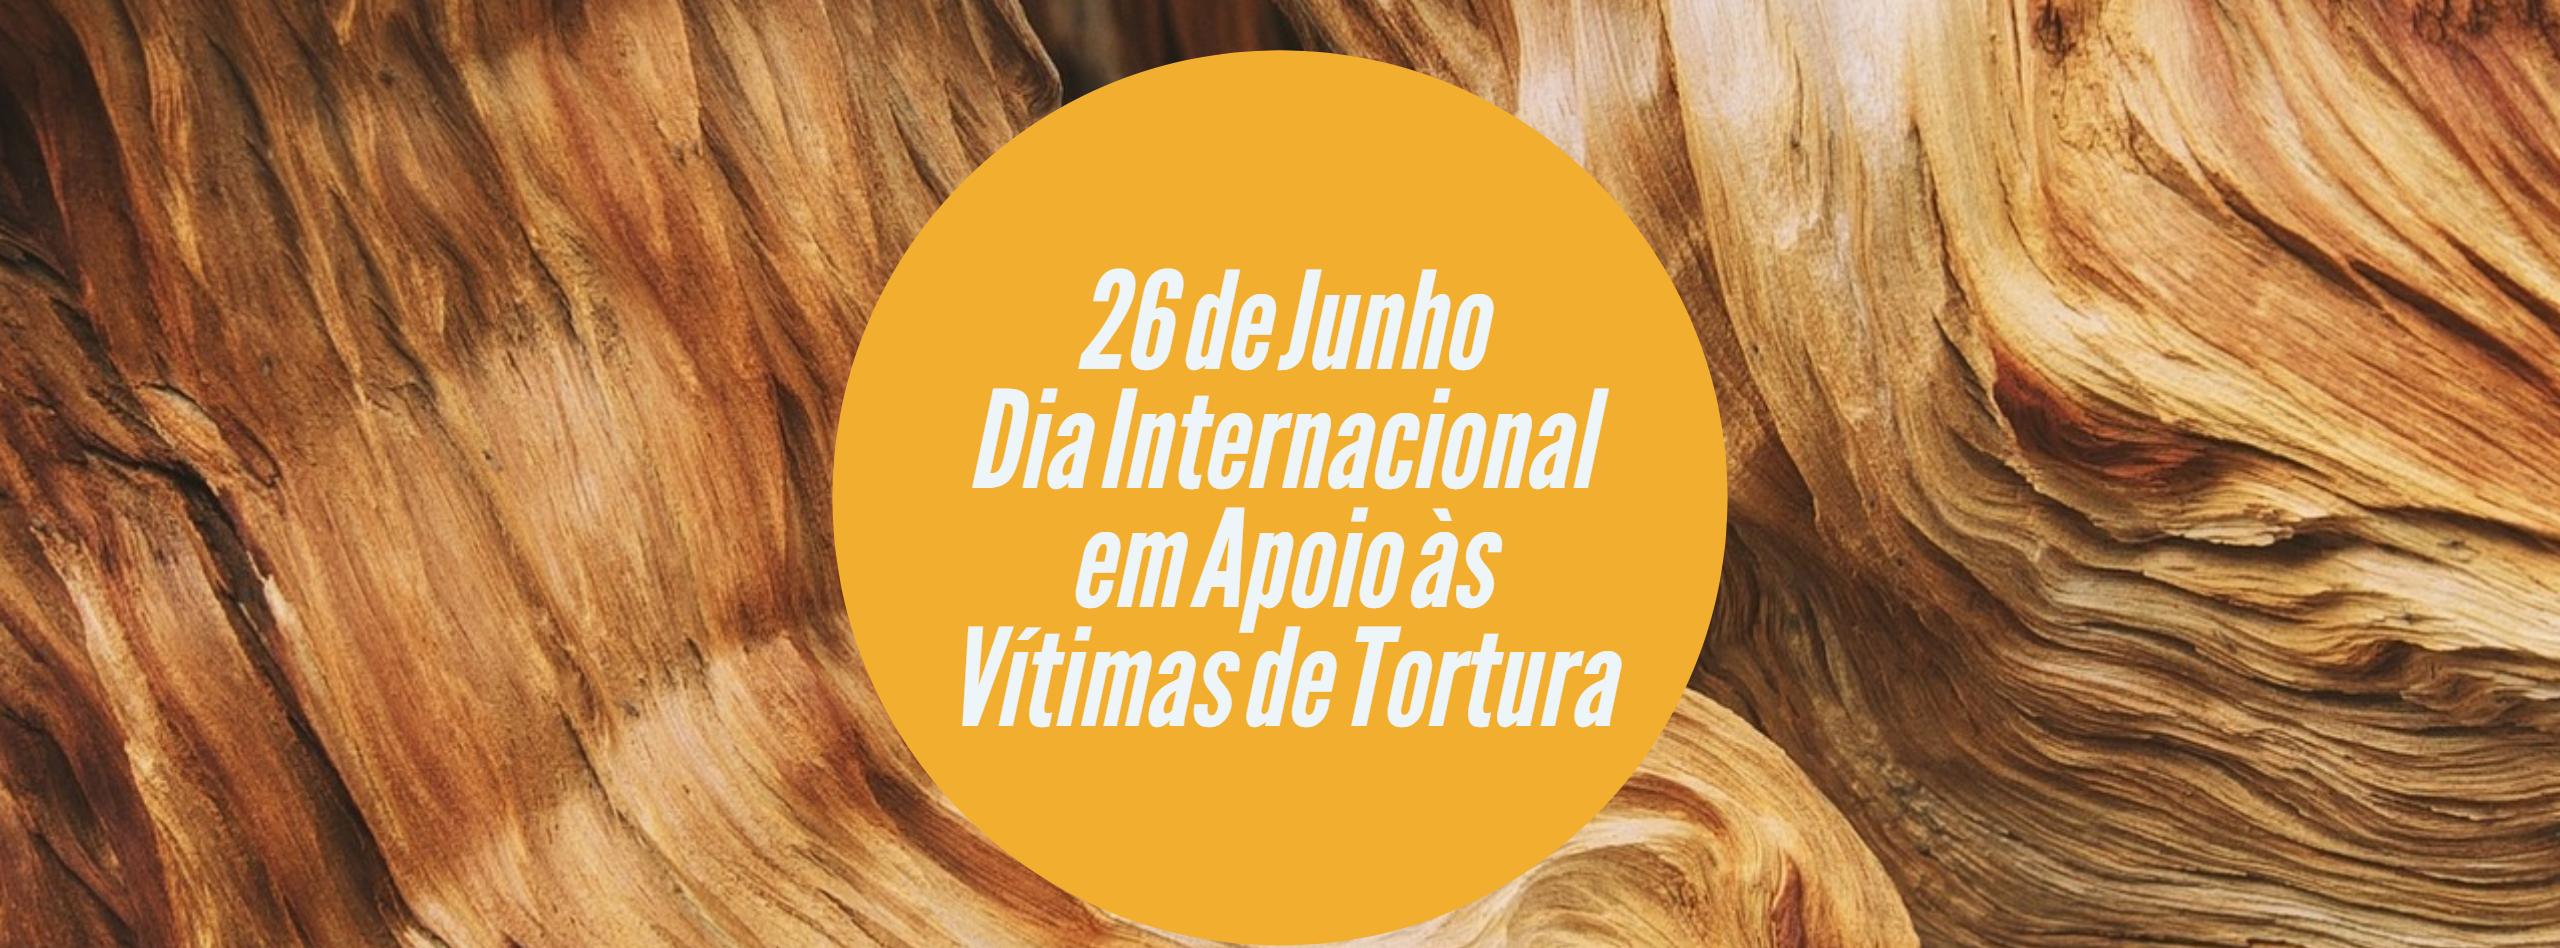 Dia Internacional em Apoio s Vtimas de Tortura